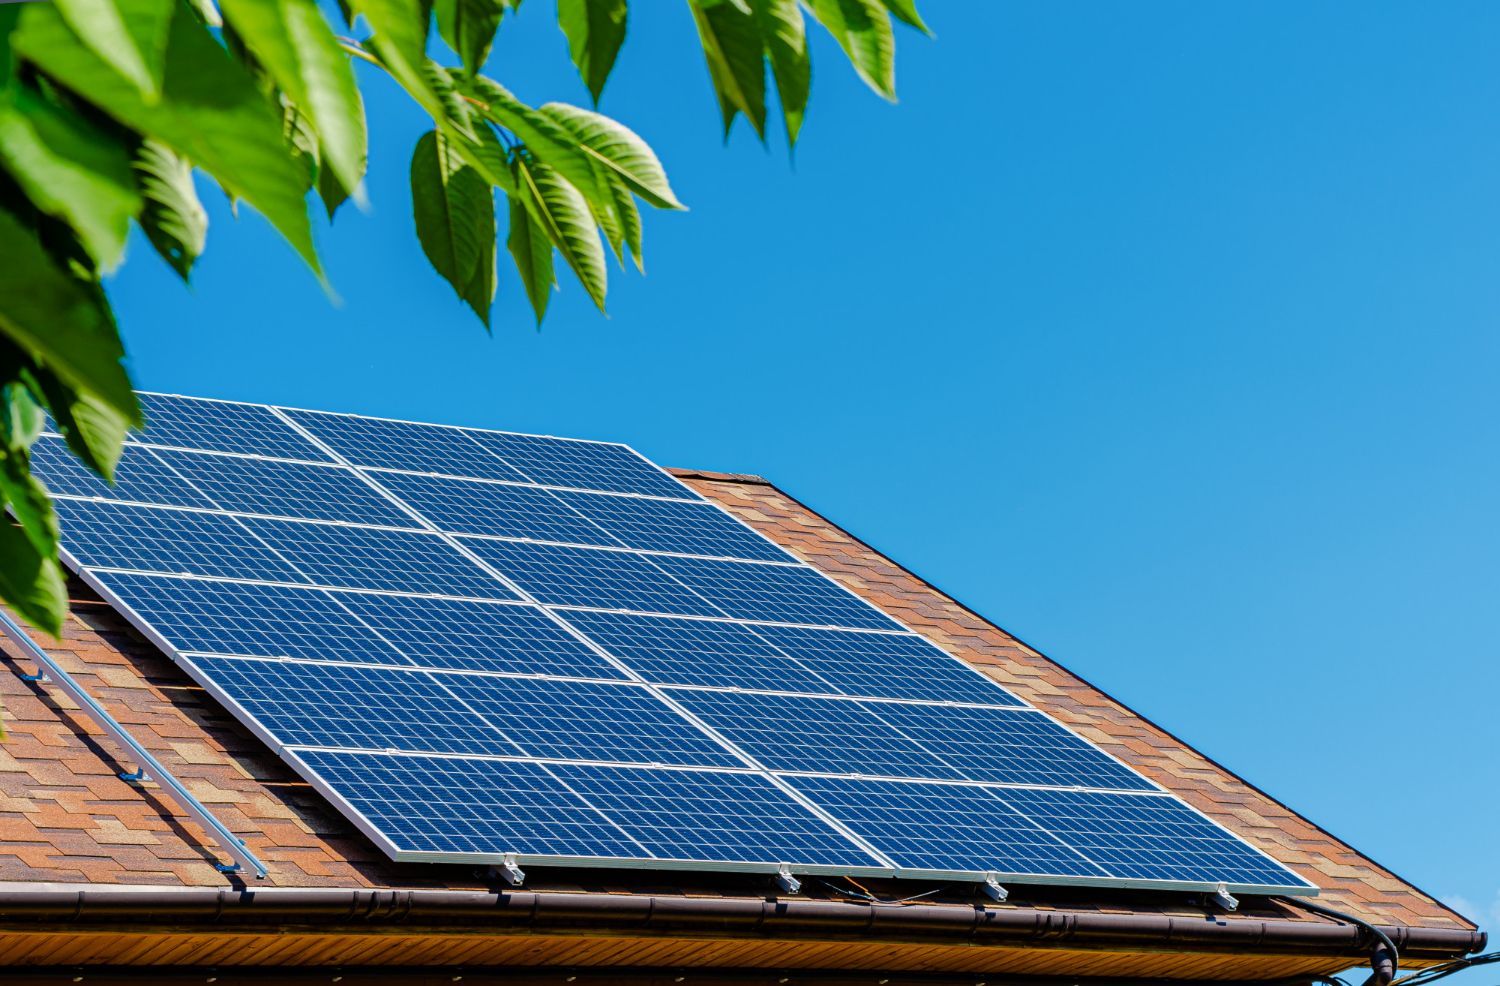 Solar panels installed on house in Tacoma, Washington.